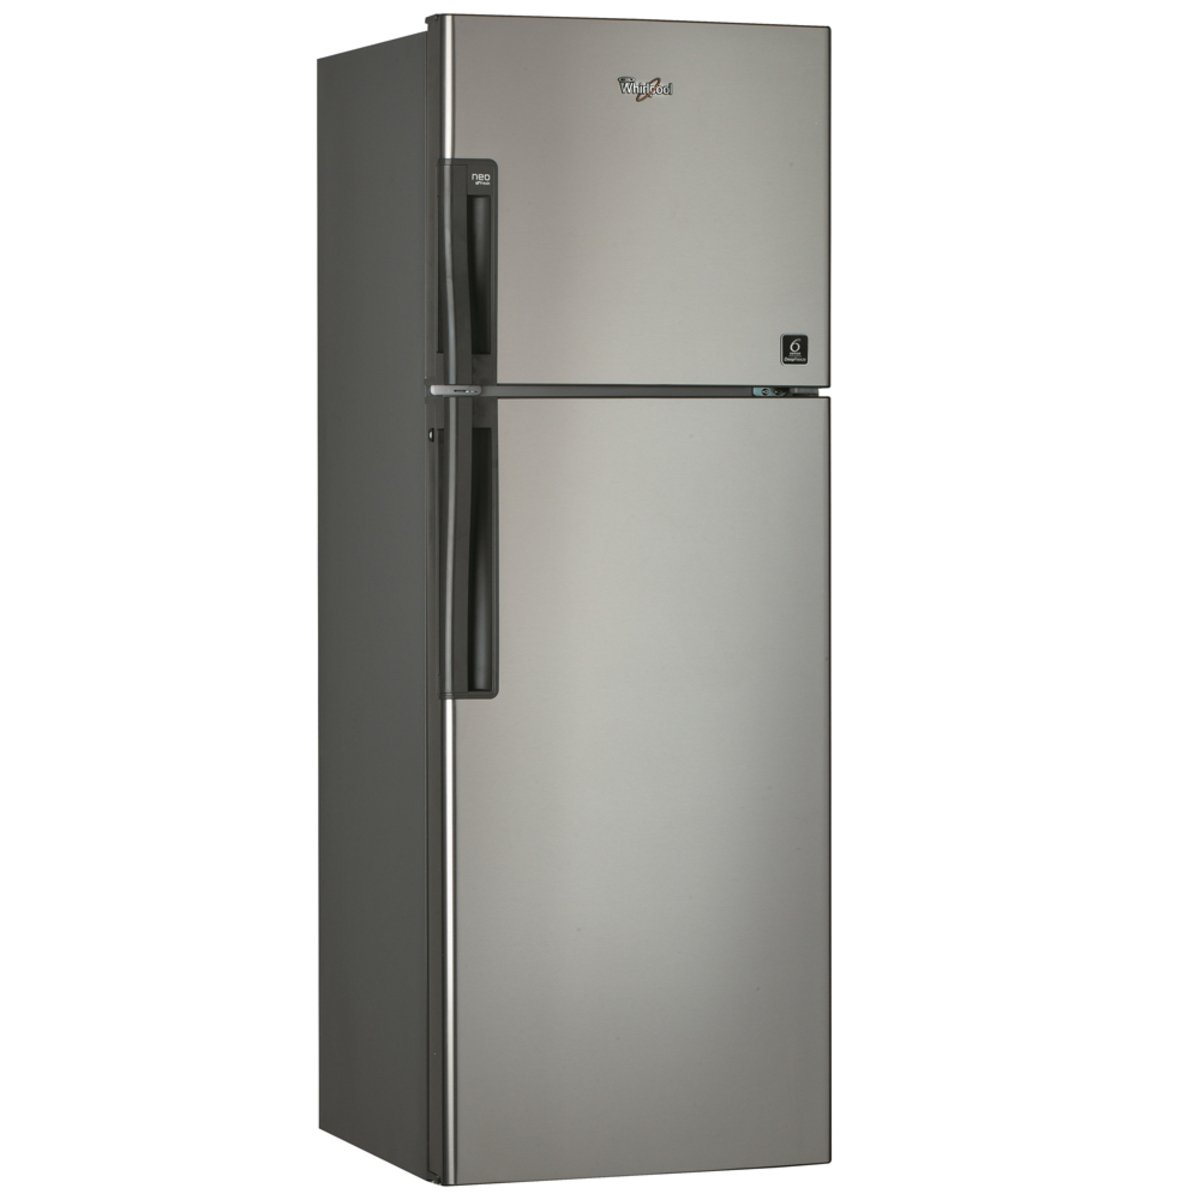 Whirlpool Double Door Refrigerator WTM552 RSL 450 Ltr